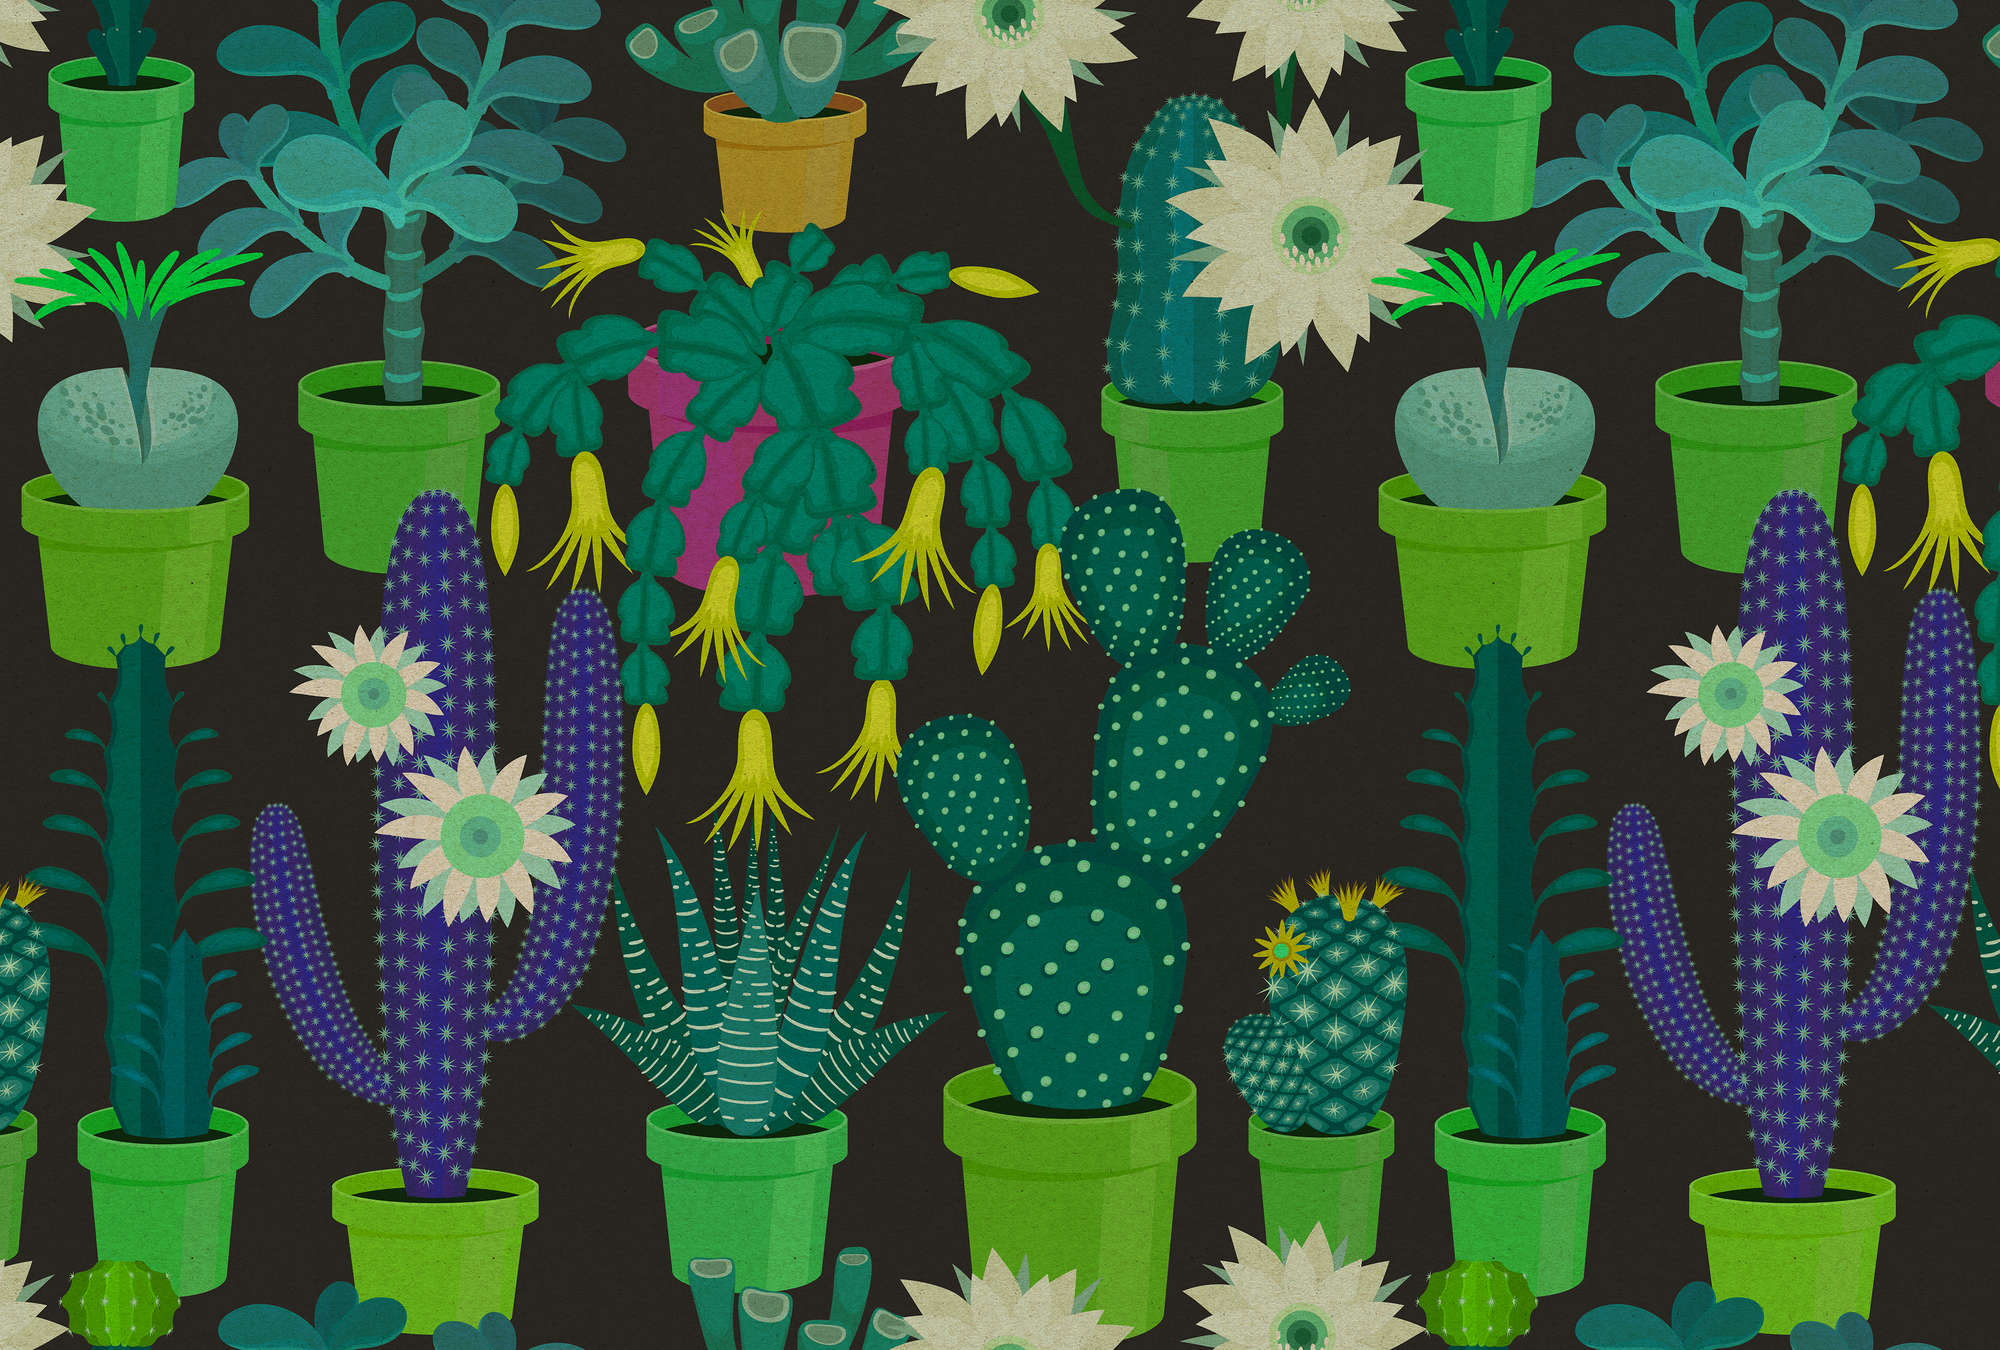             Jardín de cactus 2 - Mural de pared con cactus de colores en estilo cómic en estructura de cartón - Verde, Negro | Vellón liso Premium
        